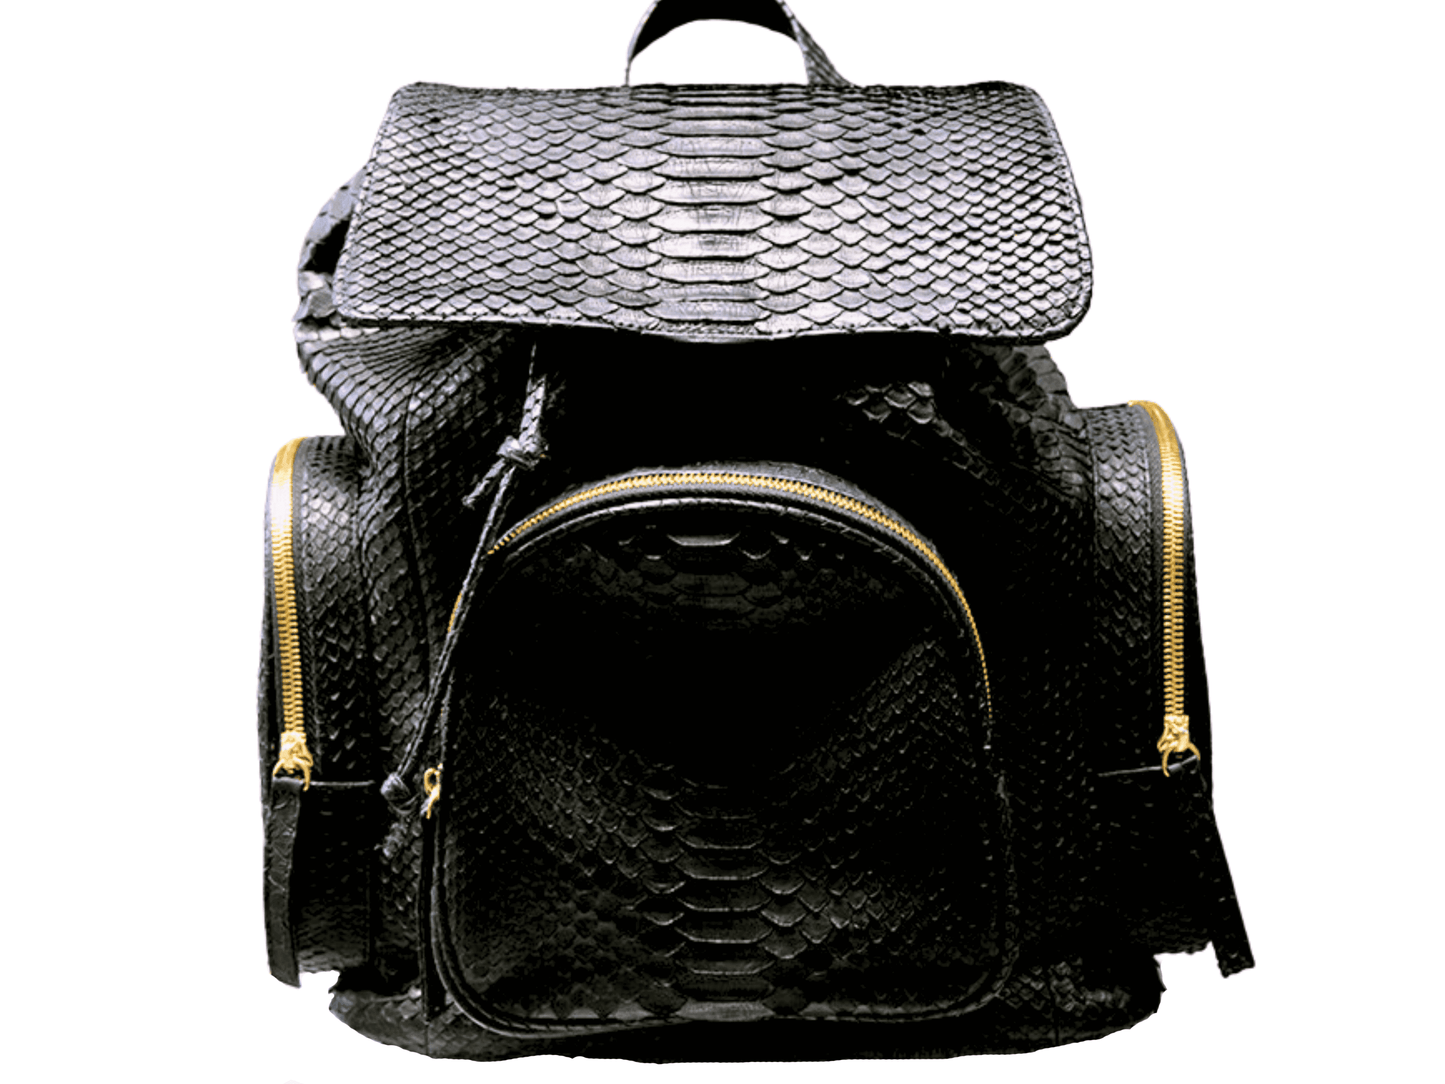 Snakeskin Backpack Purse Python Jacket by LFM Fashion